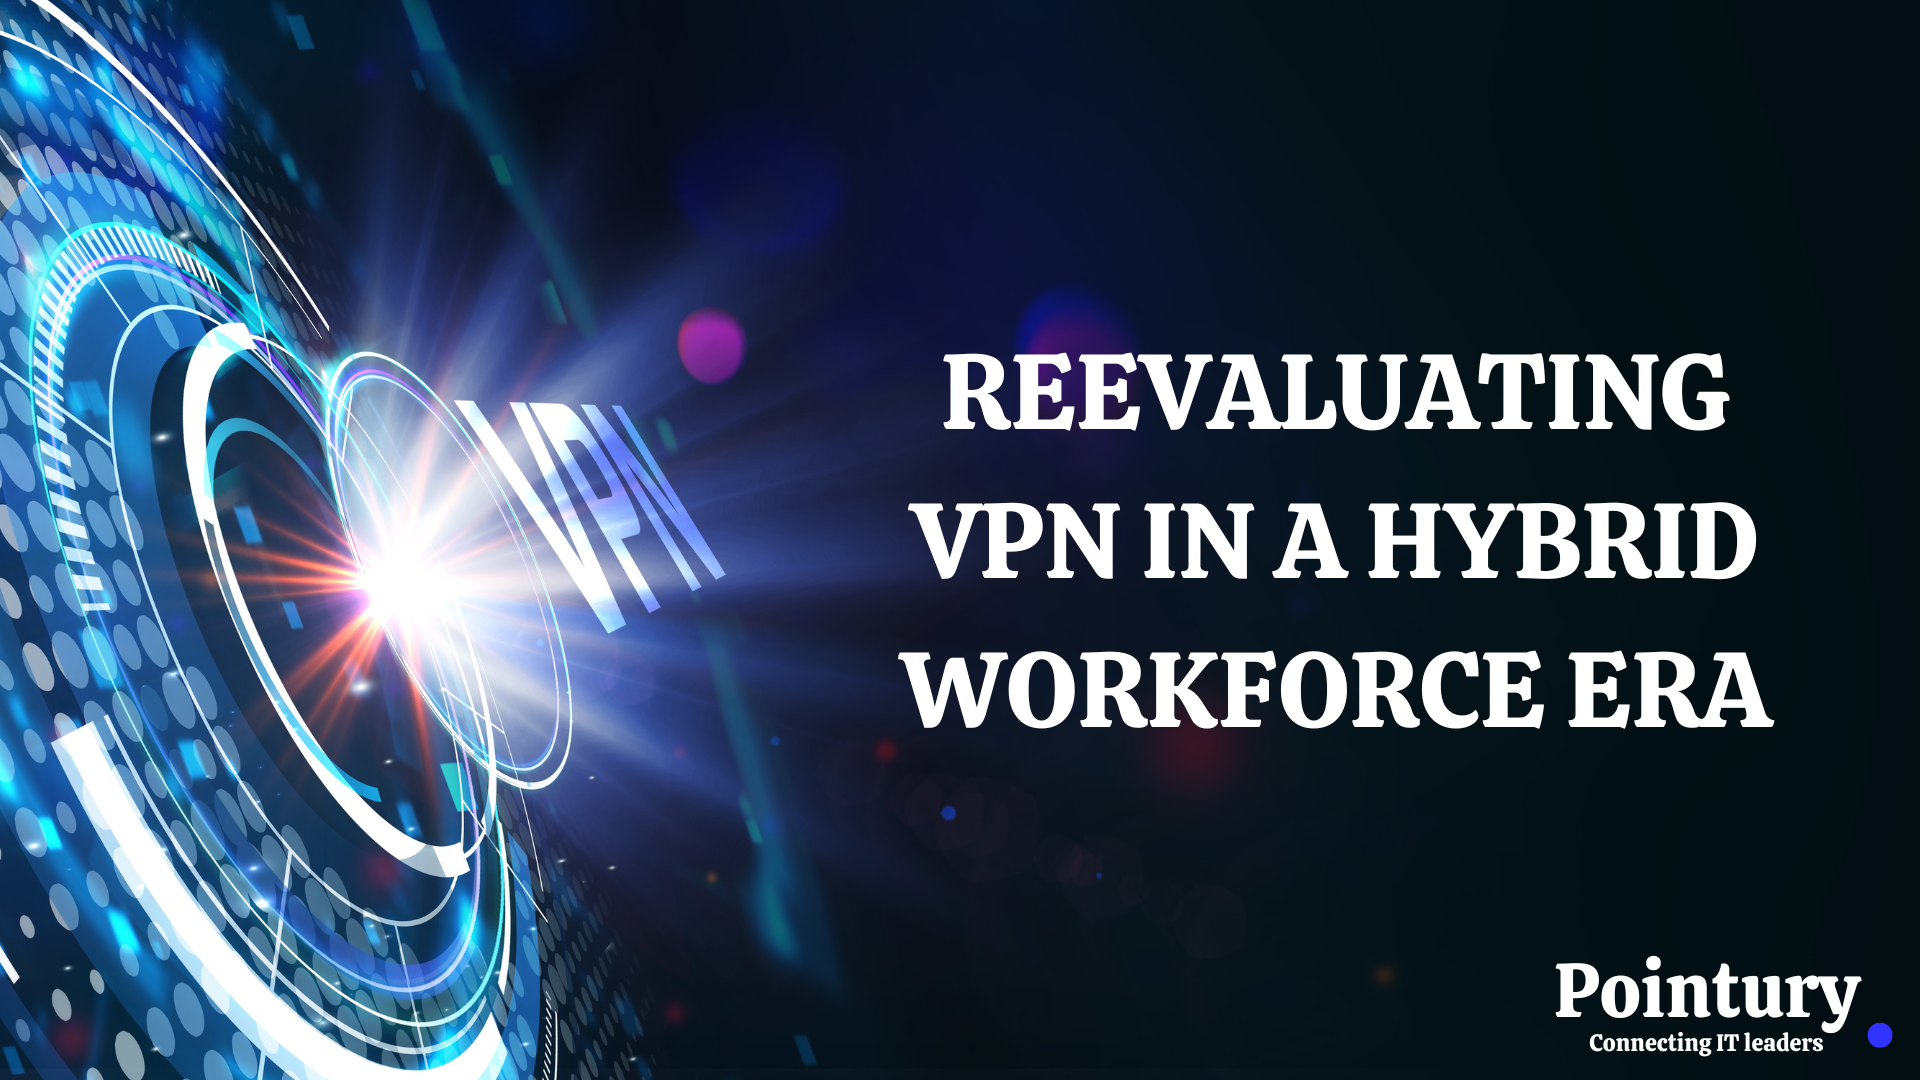 REEVALUATING VPN IN A HYBRID WORKFORCE ERA